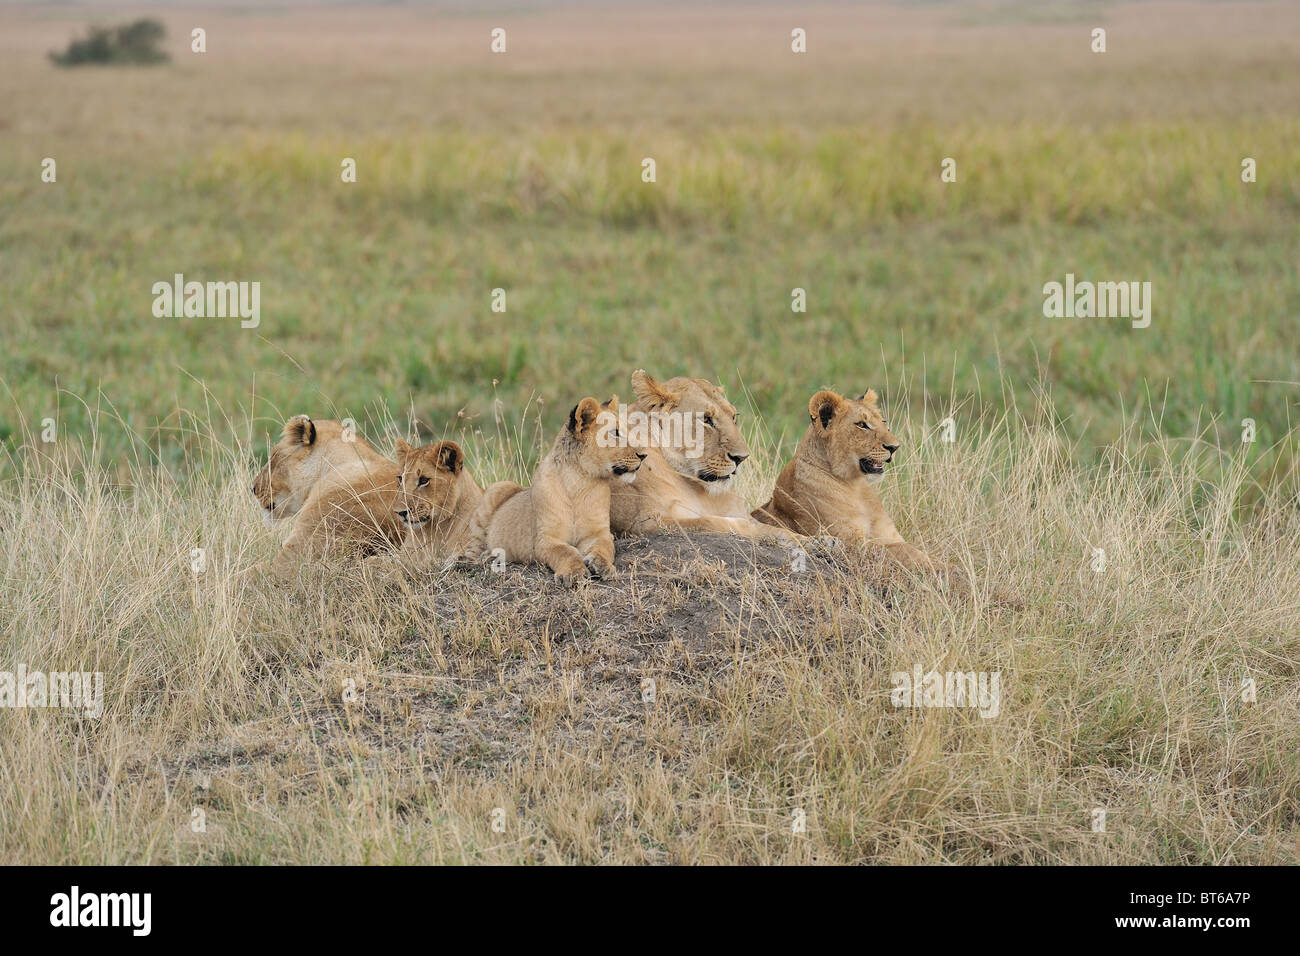 East African Lion - Massai lion (Panthera leo nubica) groupe de femelles et leurs petits reposant sur le sol Banque D'Images